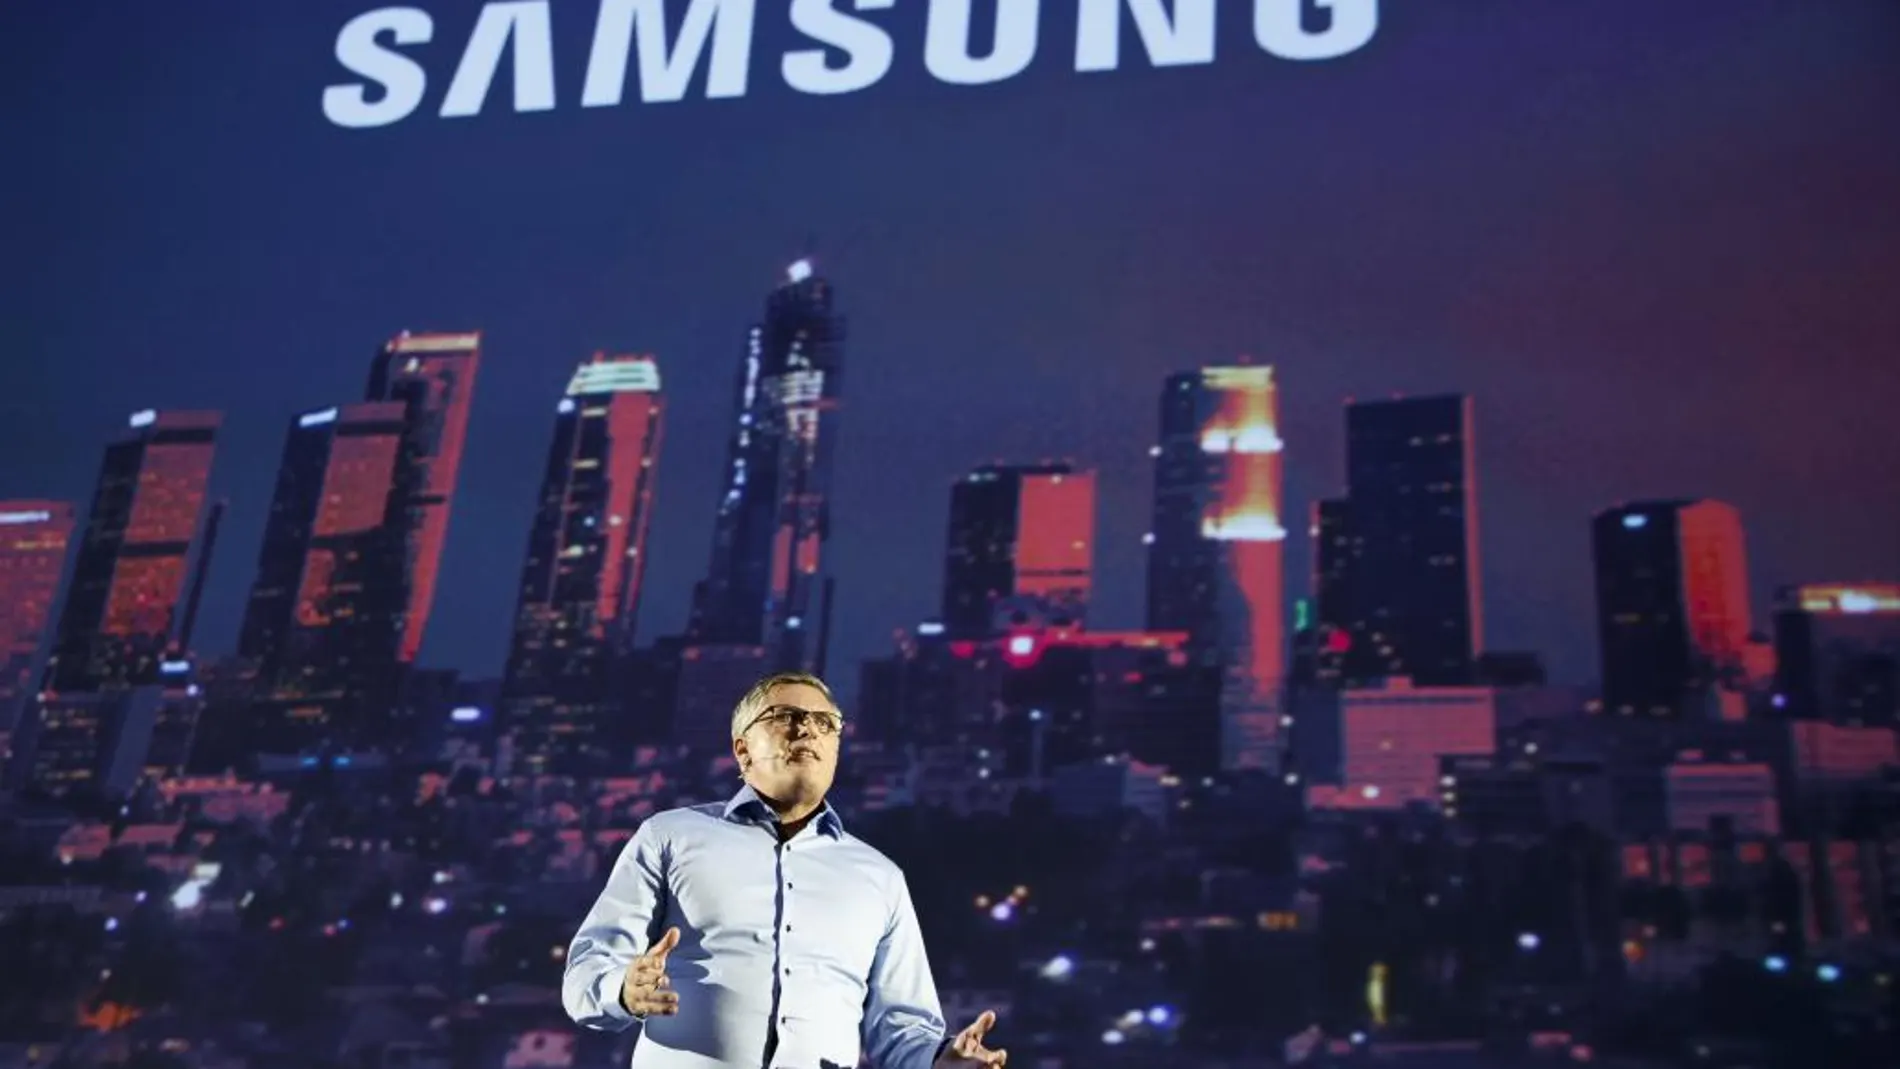 Samsung, durante su presentación en la feria IFA